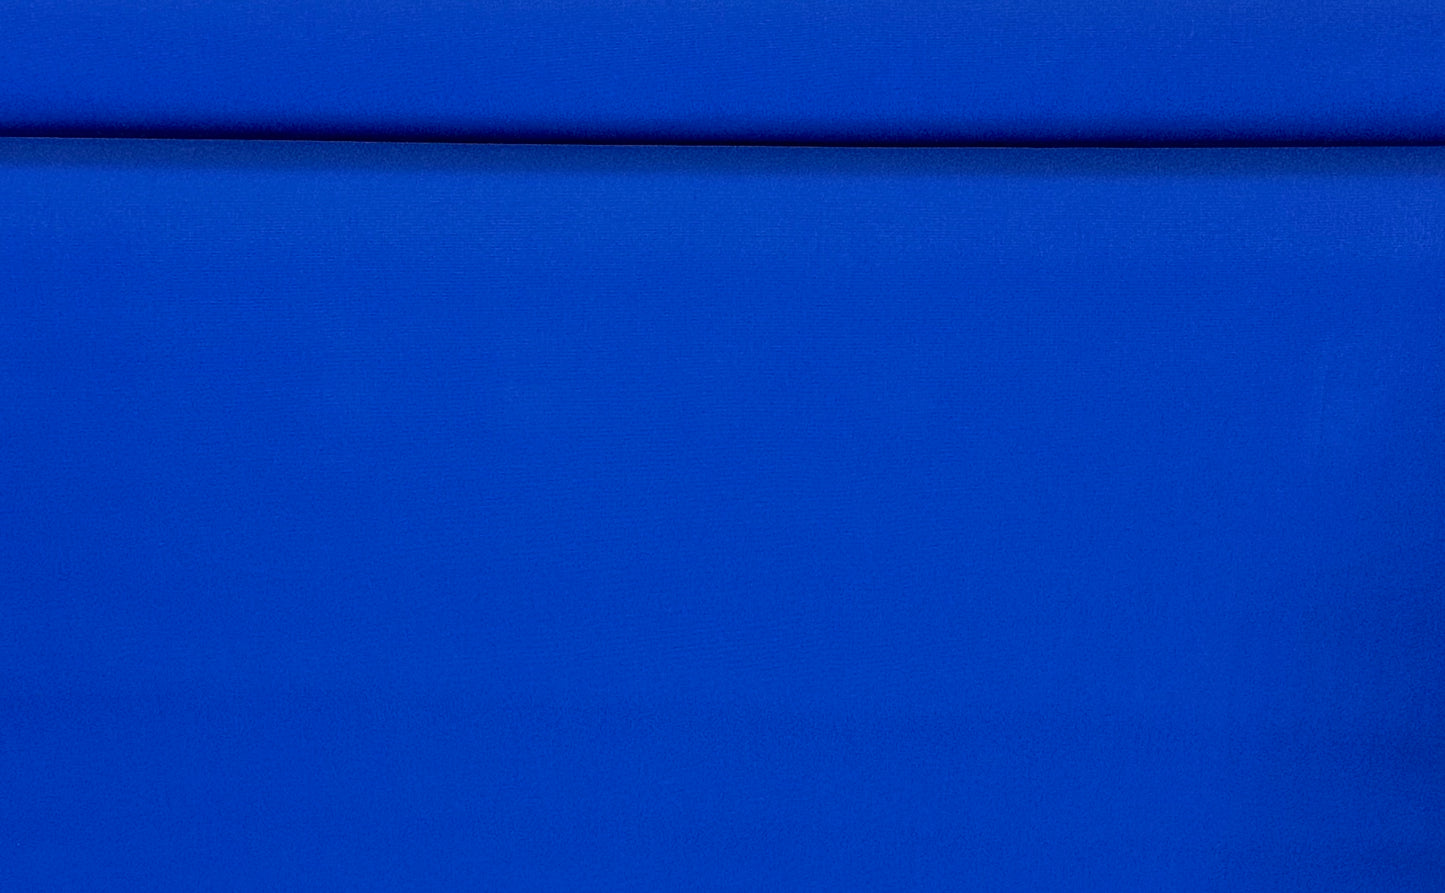 SUNBRELLA SHADE CANVAS FABRIC MARINE AWNING OCEAN BLUE 4679 47" WIDE BY THE YARD